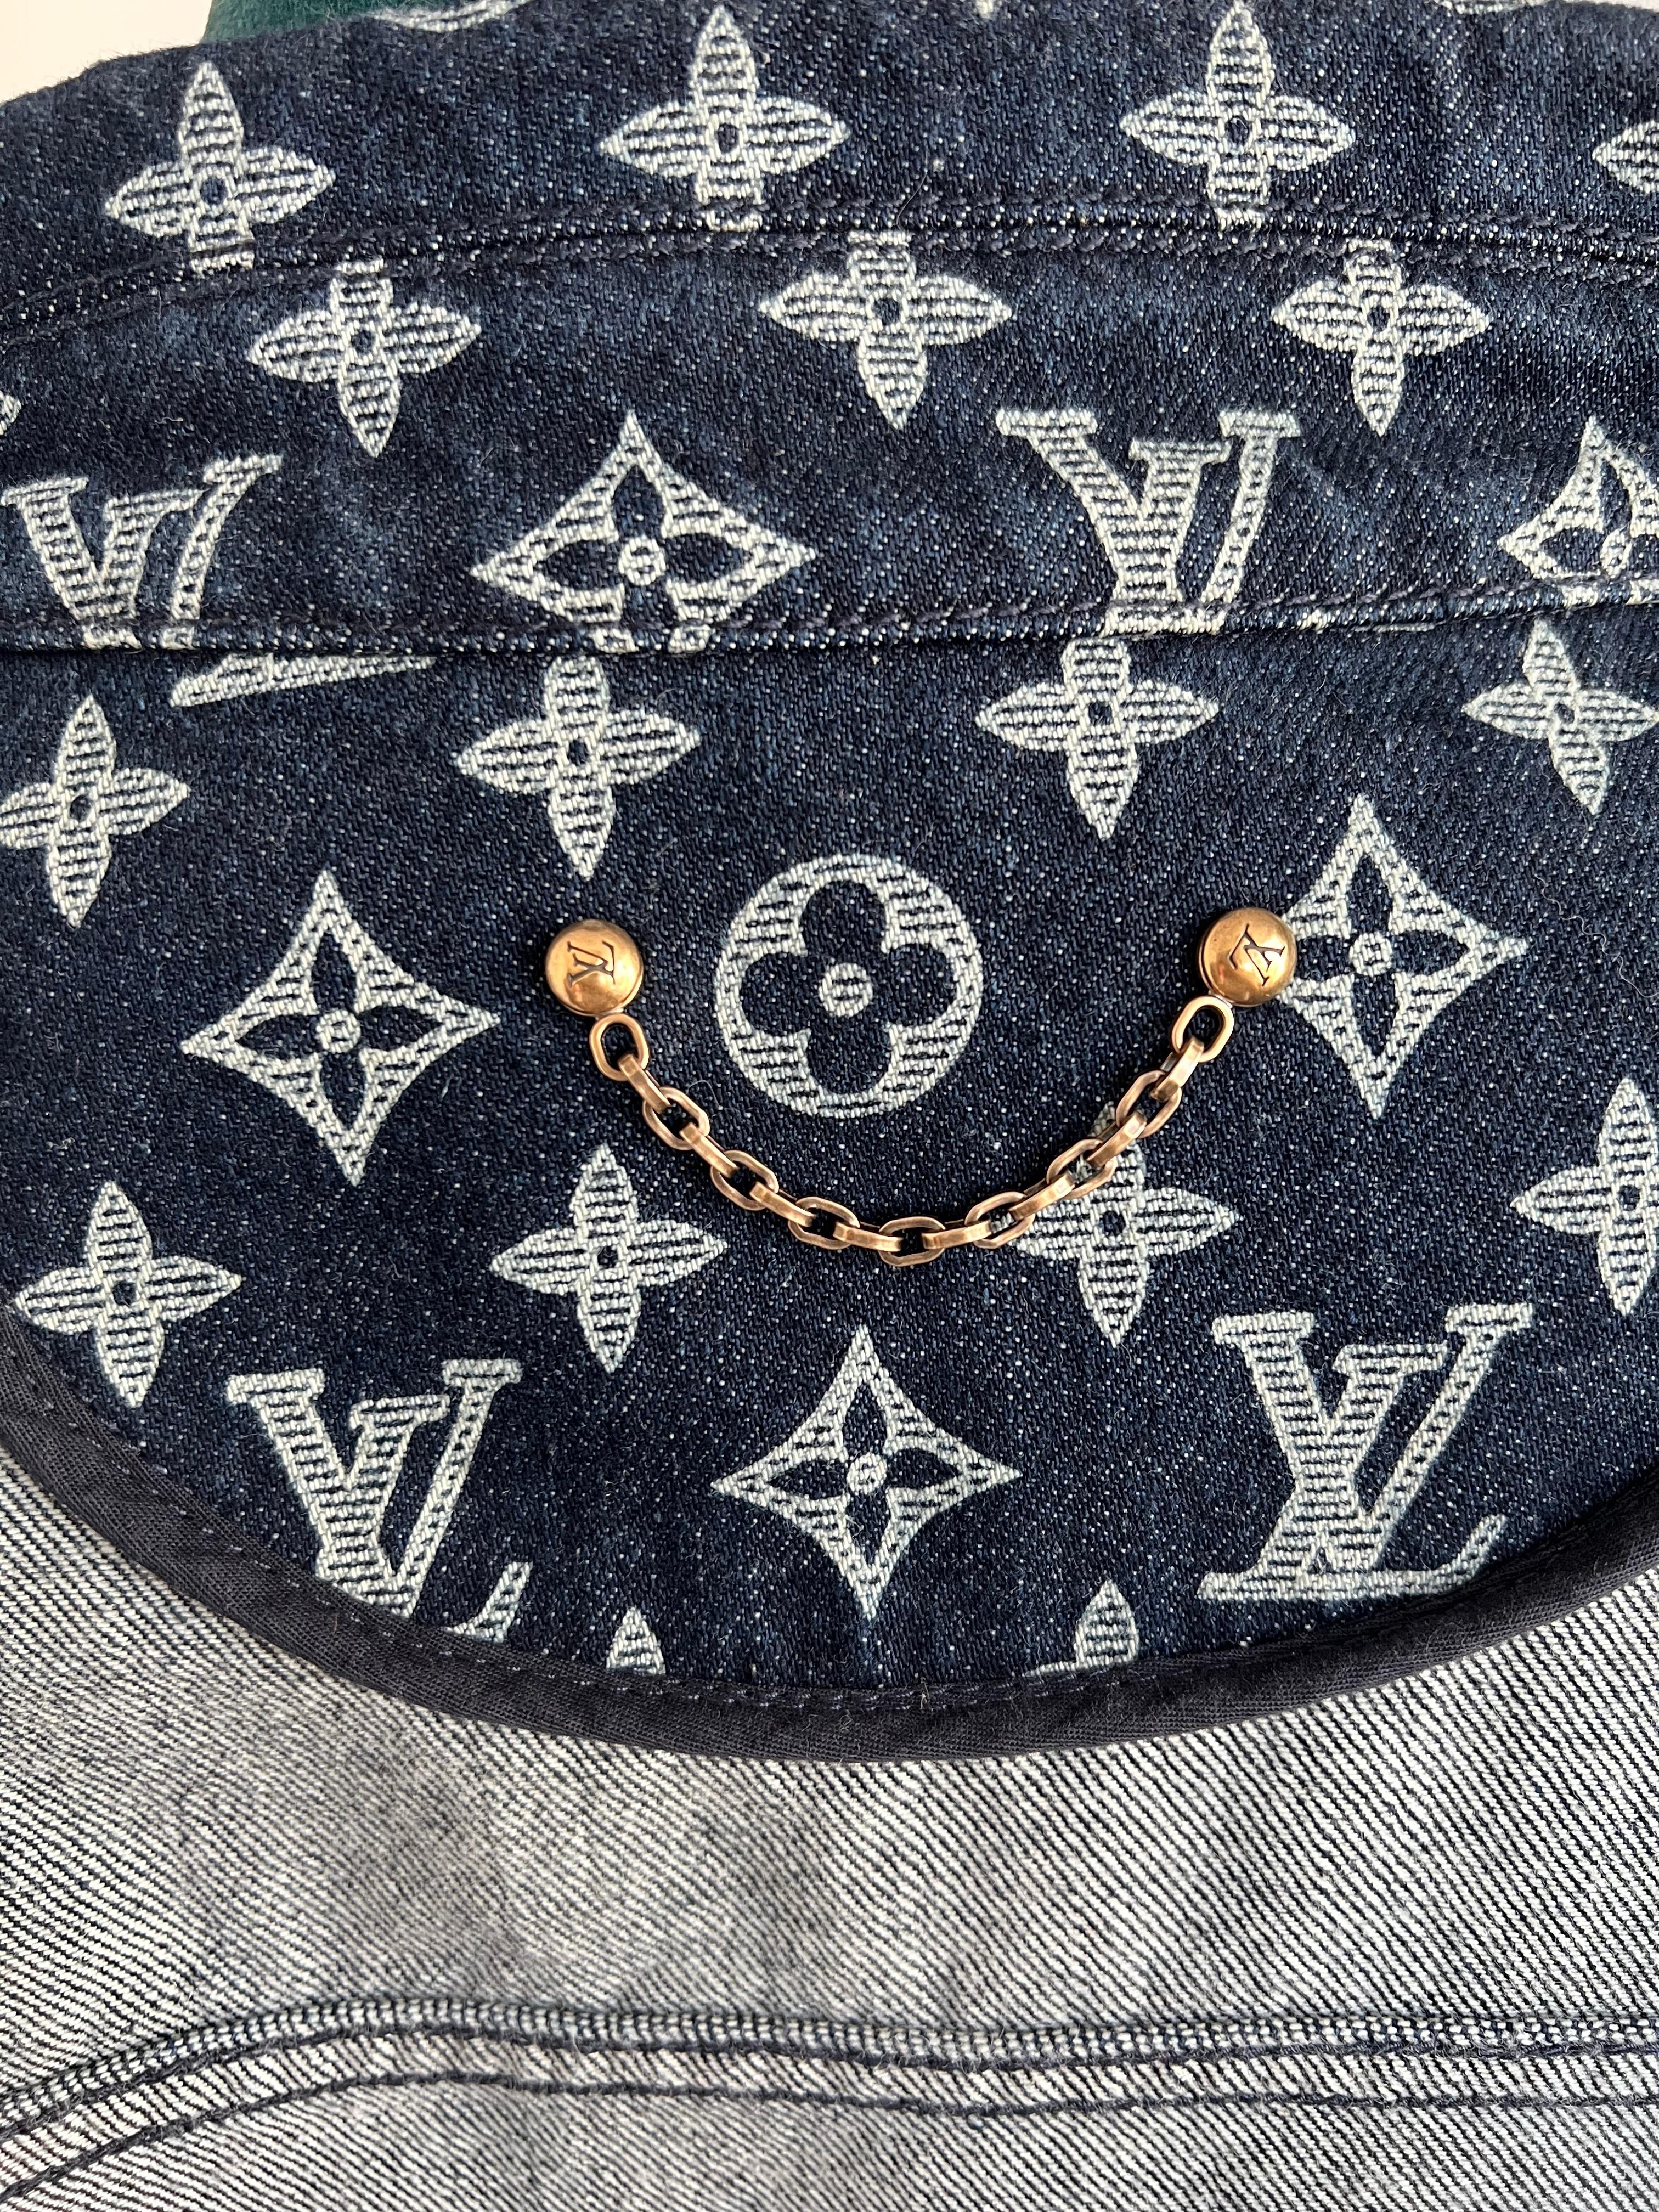 2019 Louis Vuitton men's Monogram Denim Jacket by Virgil Abloh For Sale 1